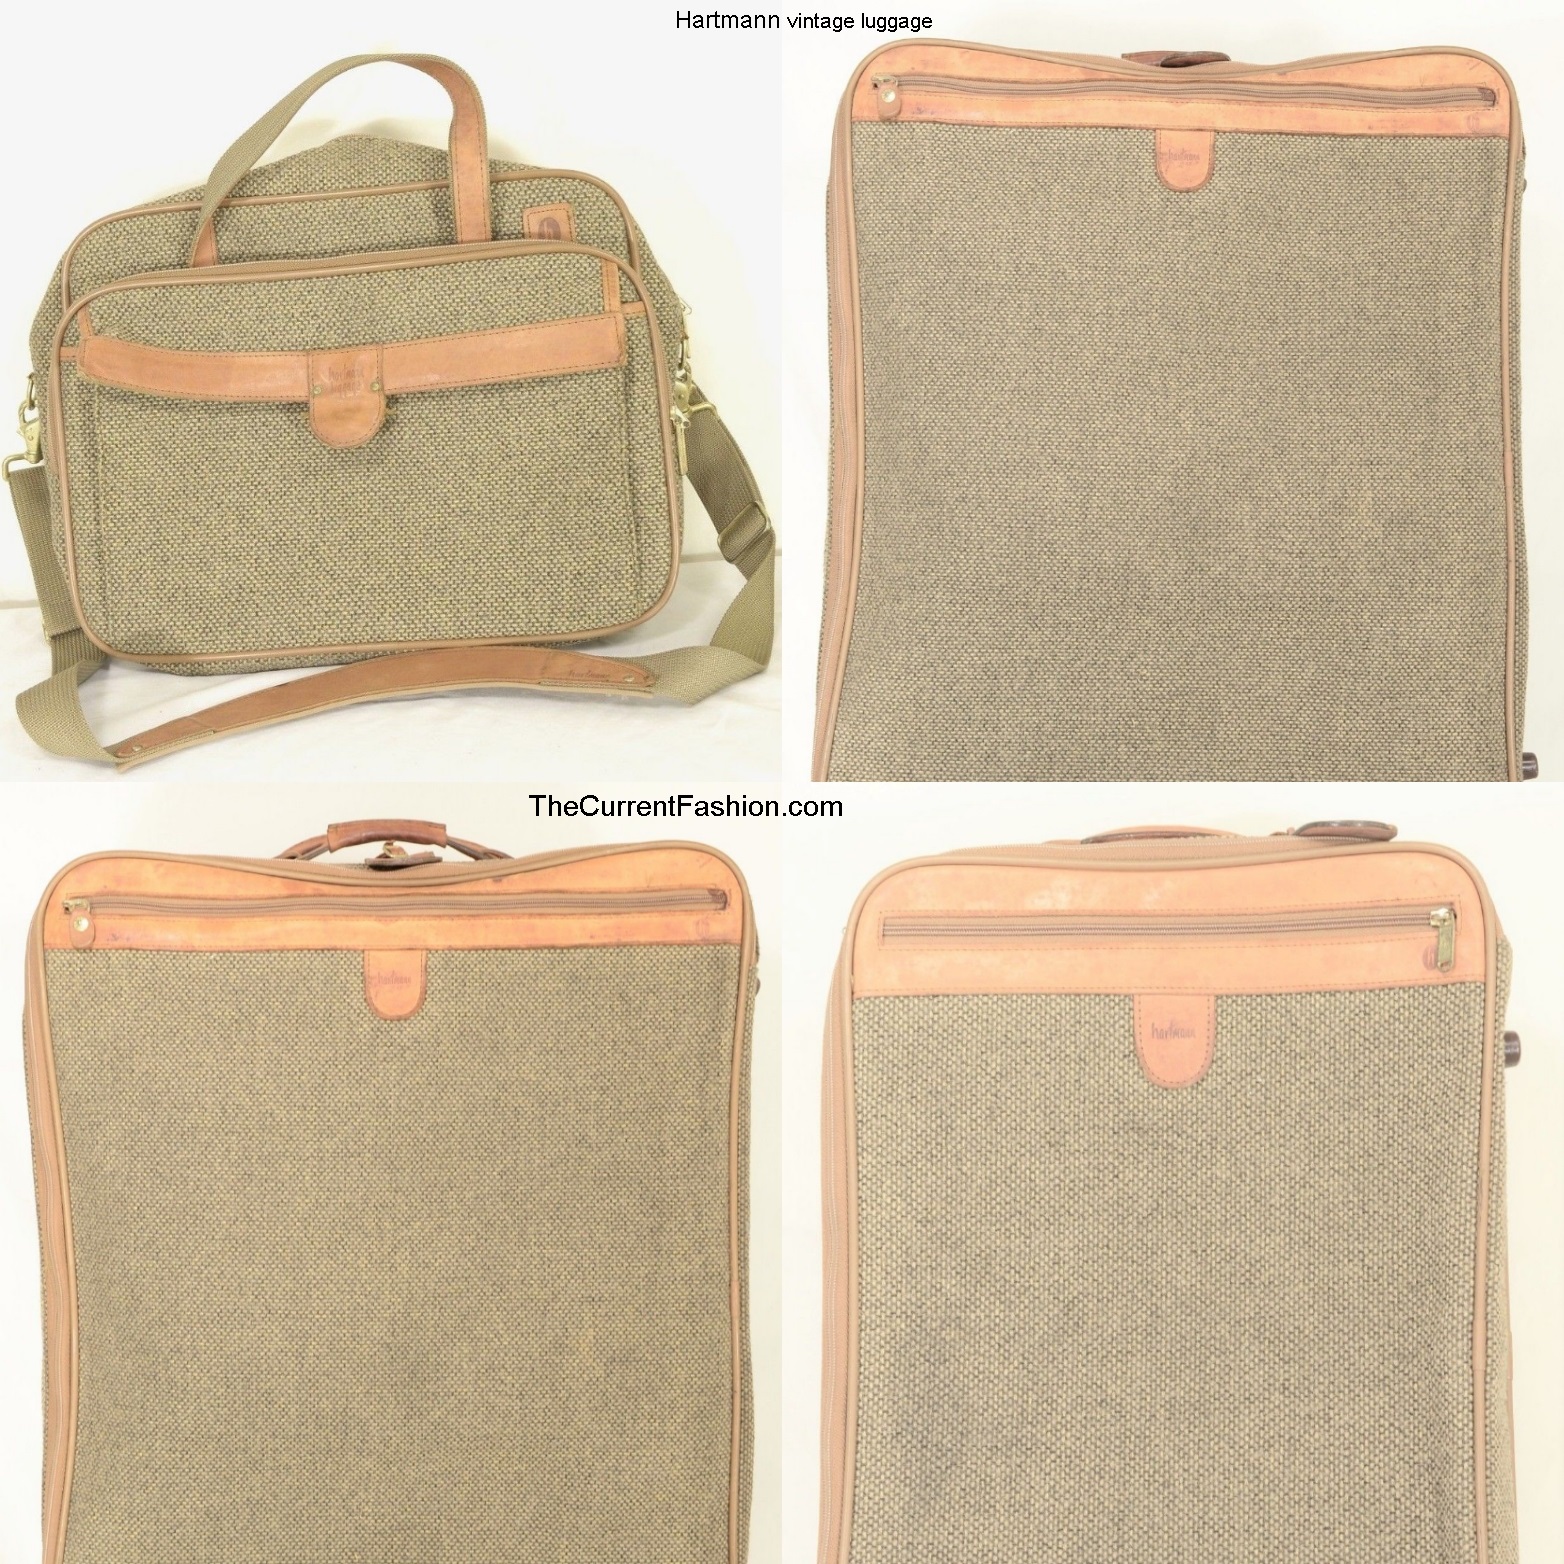 Hartmann vintage luggage bag walnut brown tweed leather ...